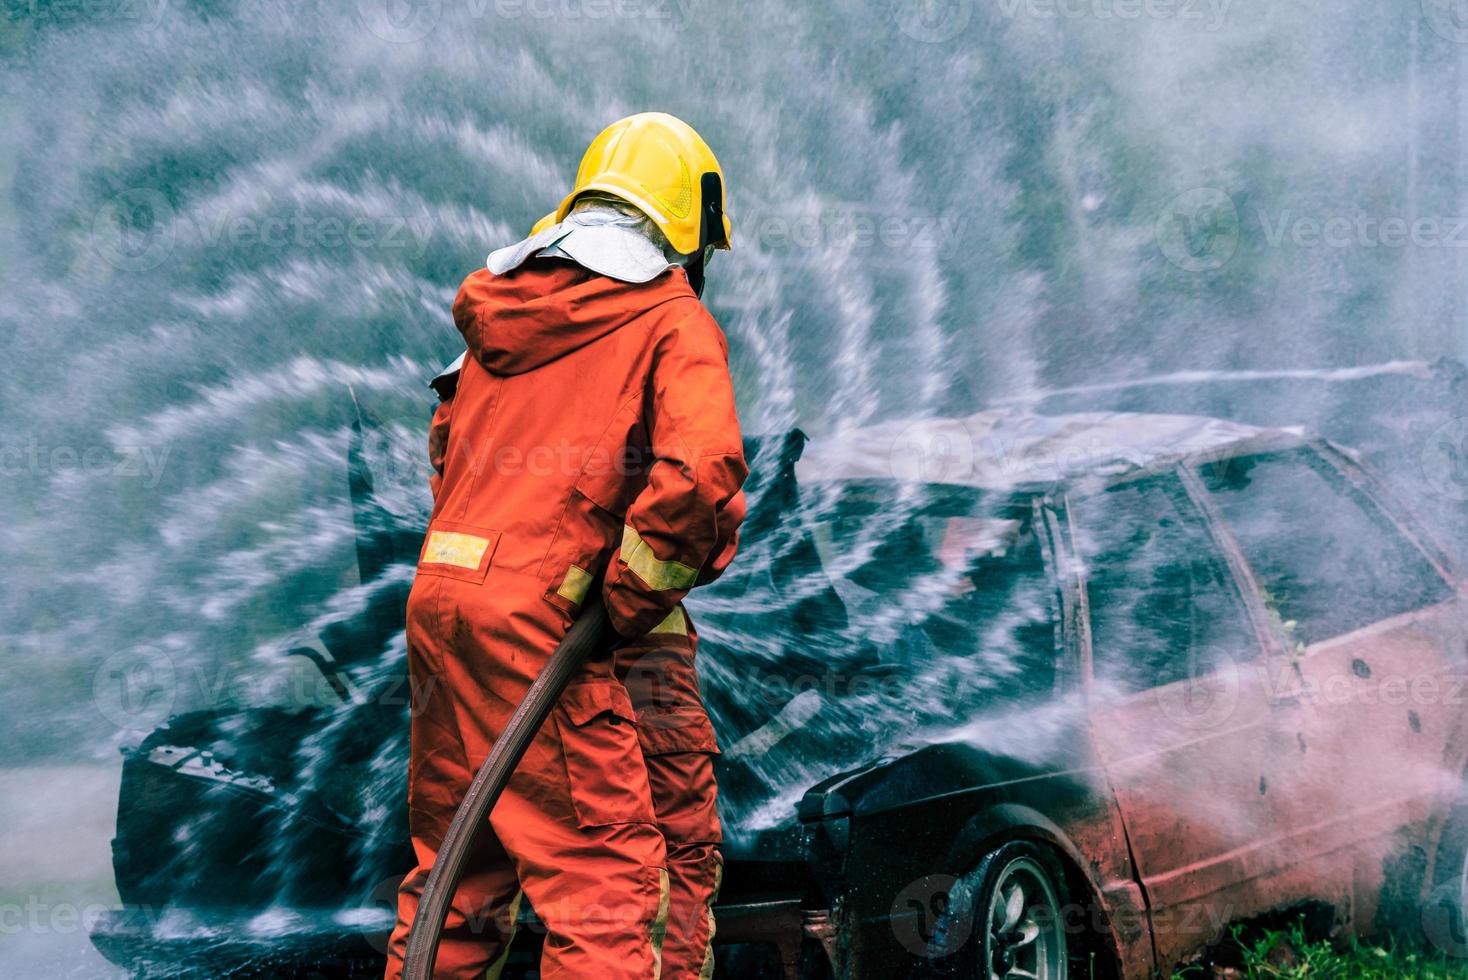 entrenamiento de rescate de bomberos para detener la llama ardiente, el bombero usa casco y traje uniforme de seguridad para protección contra quemaduras usando manguera con rociador de espuma de agua química. foto